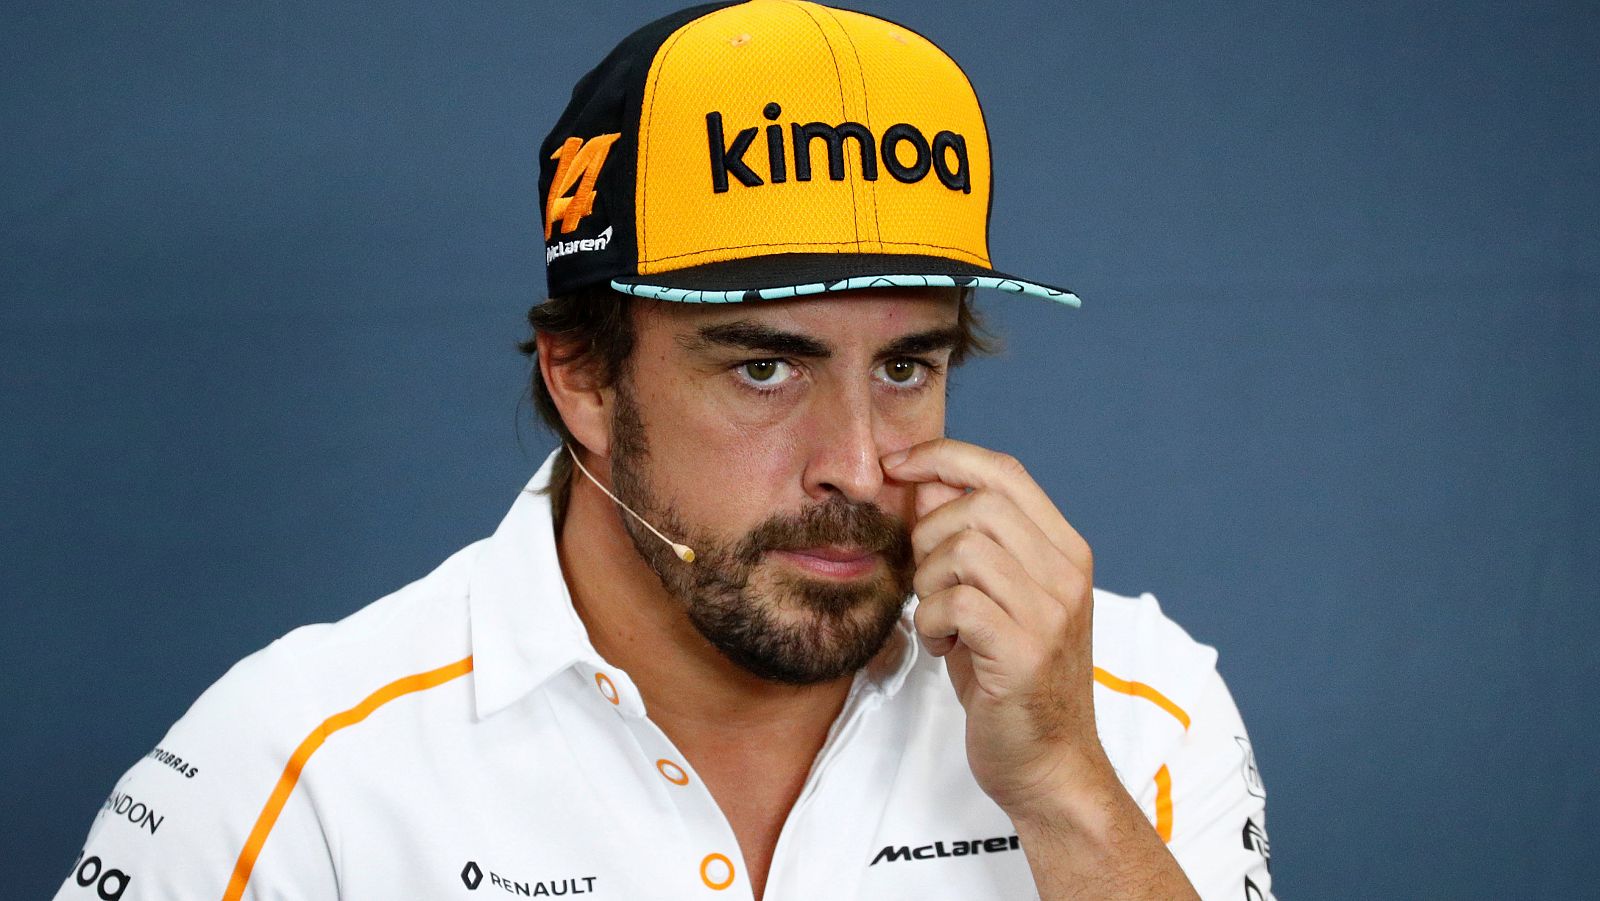 El piloto español Fernando Alonso (McLaren), en rueda de prensa en Spa.